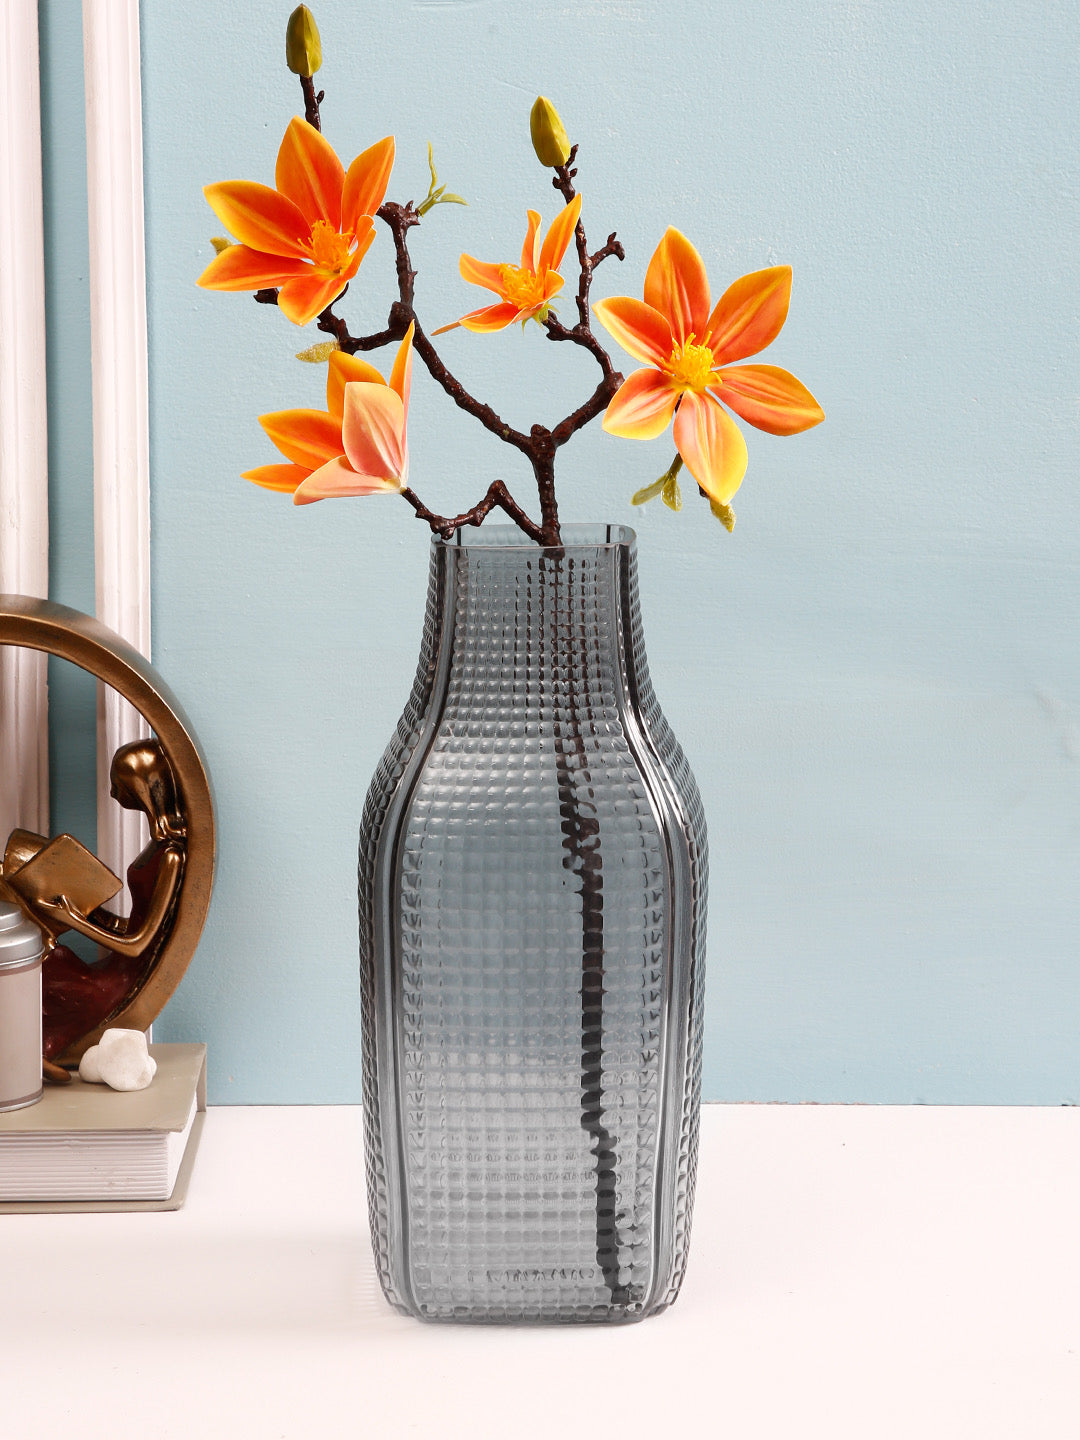 Tuffened Bubble Glass Flower Vase - Default Title (VAS21023)